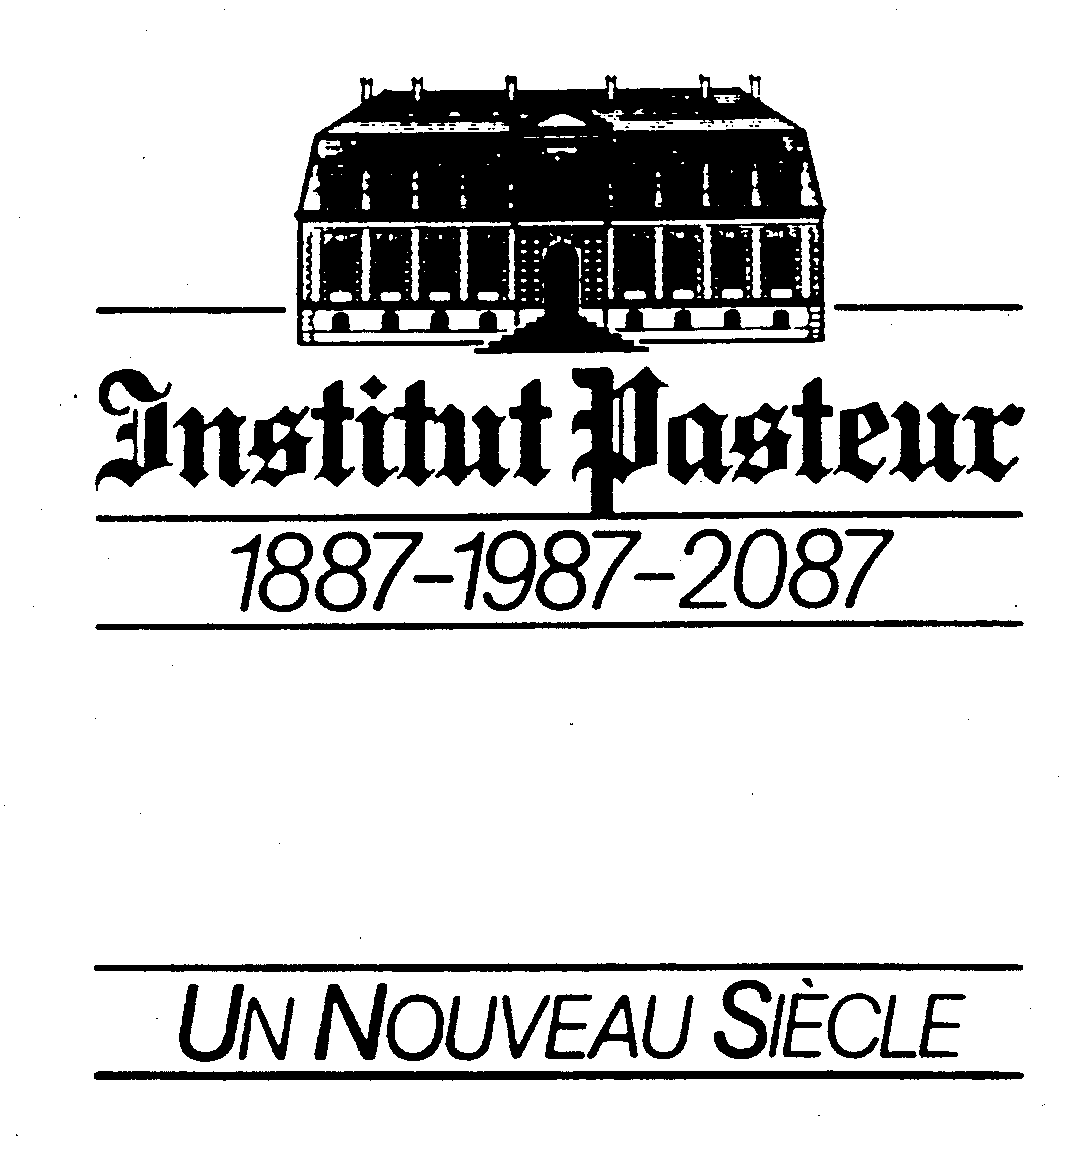  INSTITUT PASTEUR 1887-1987-2087 UN NOUVEAU SIECLE